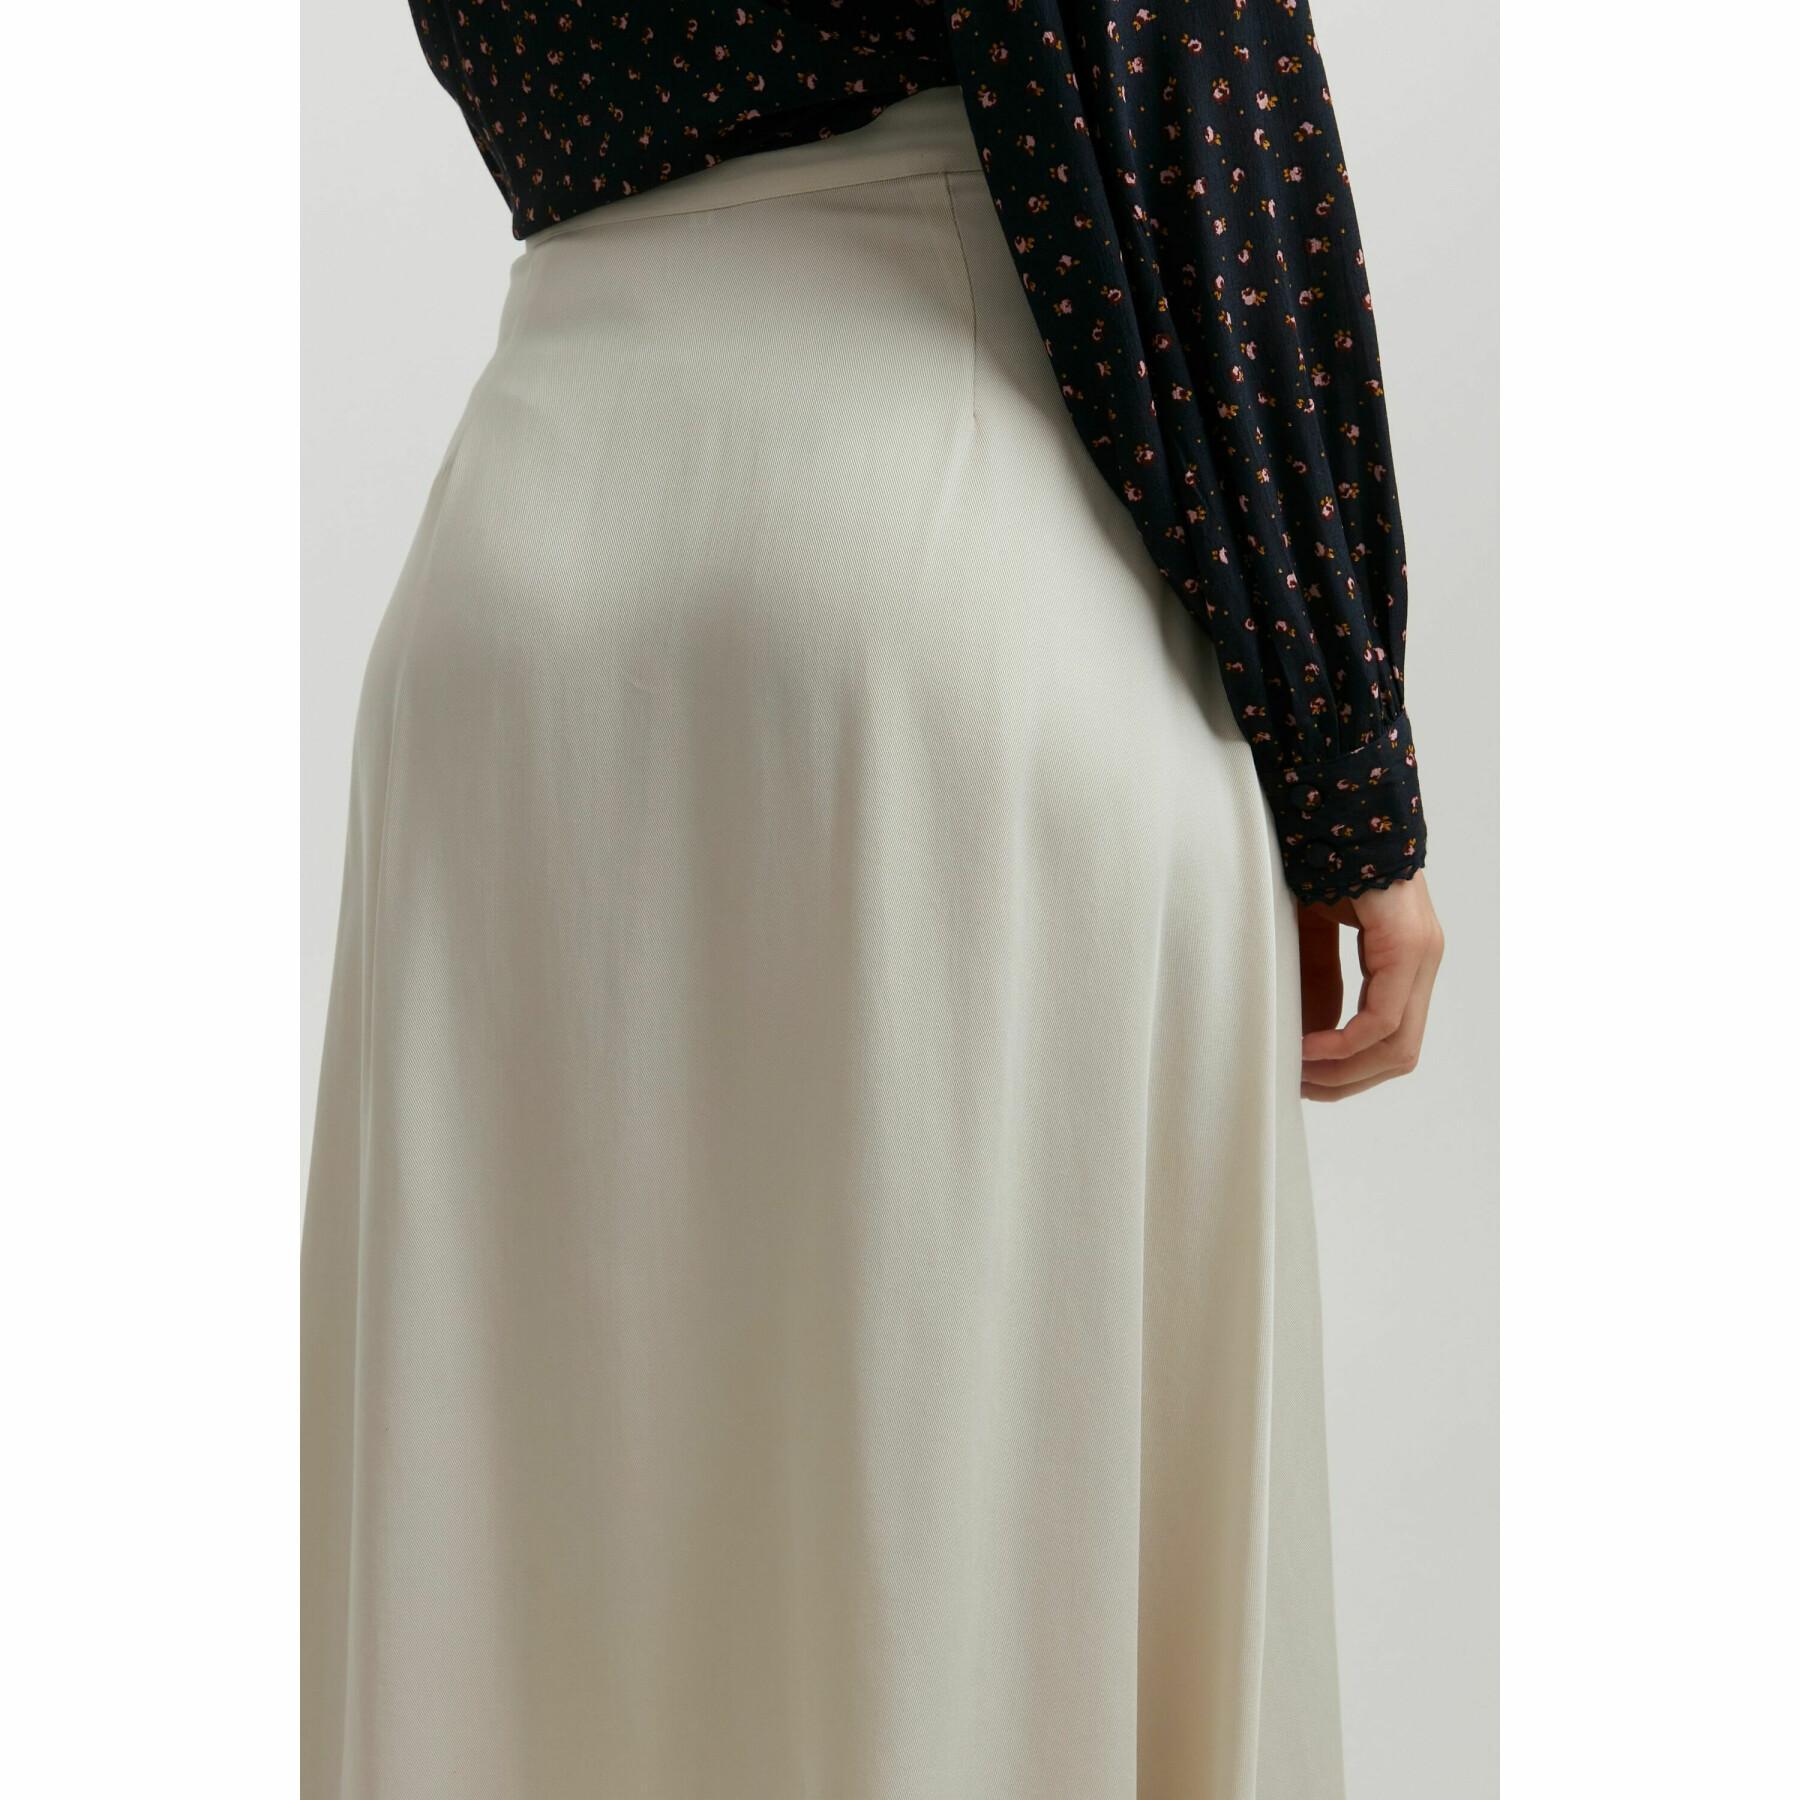 Lång kjol för kvinnor Atelier Rêve Irleonora